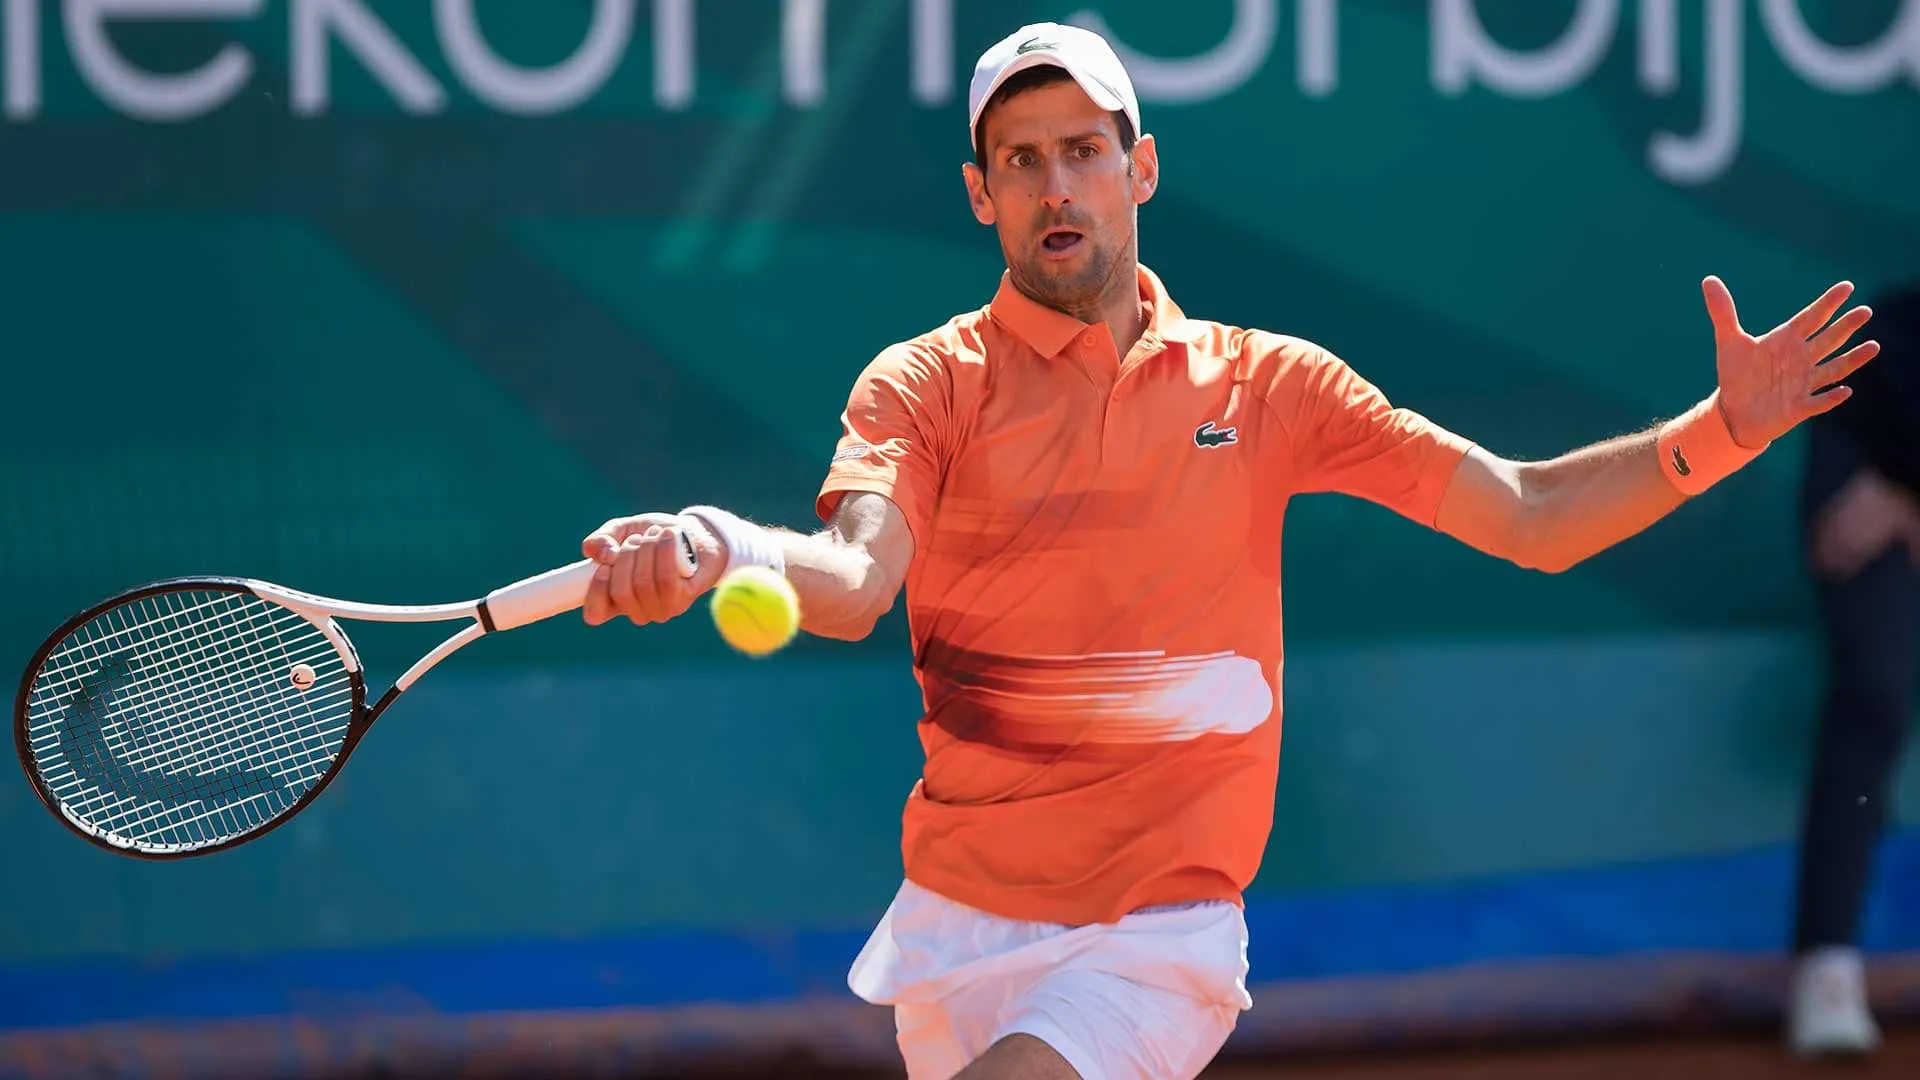 Djokovic ngược dòng vào chung kết Serbia Open - Rublev cho rằng Wimbledon phân biệt đối xử